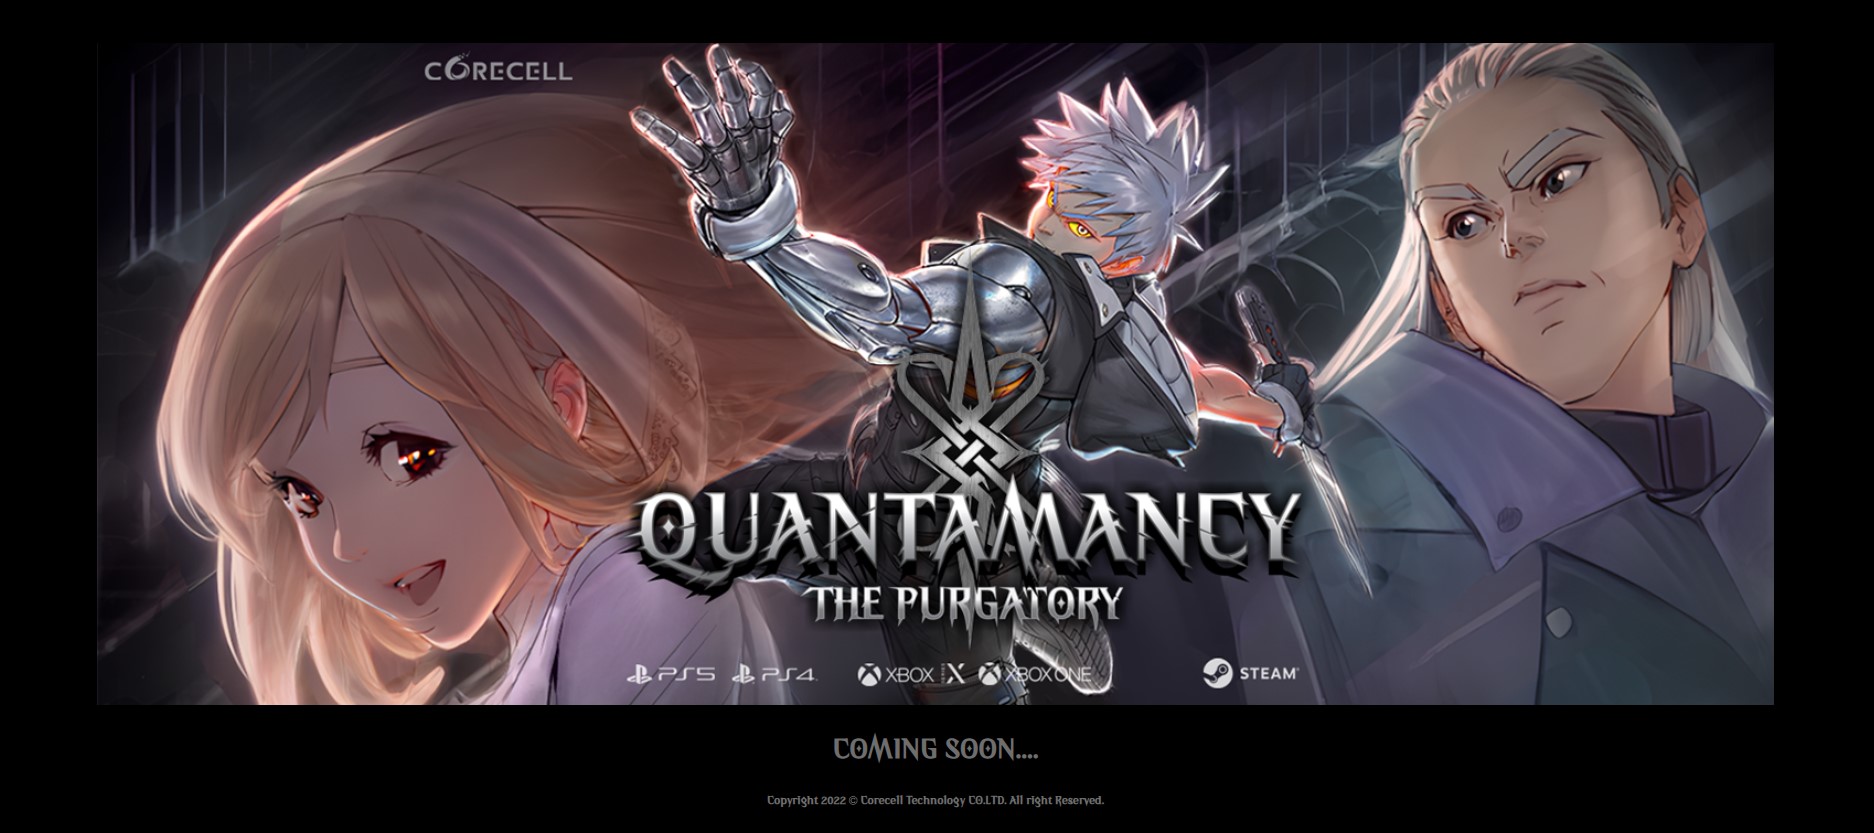 Quantamancy The Purgatory gameplay